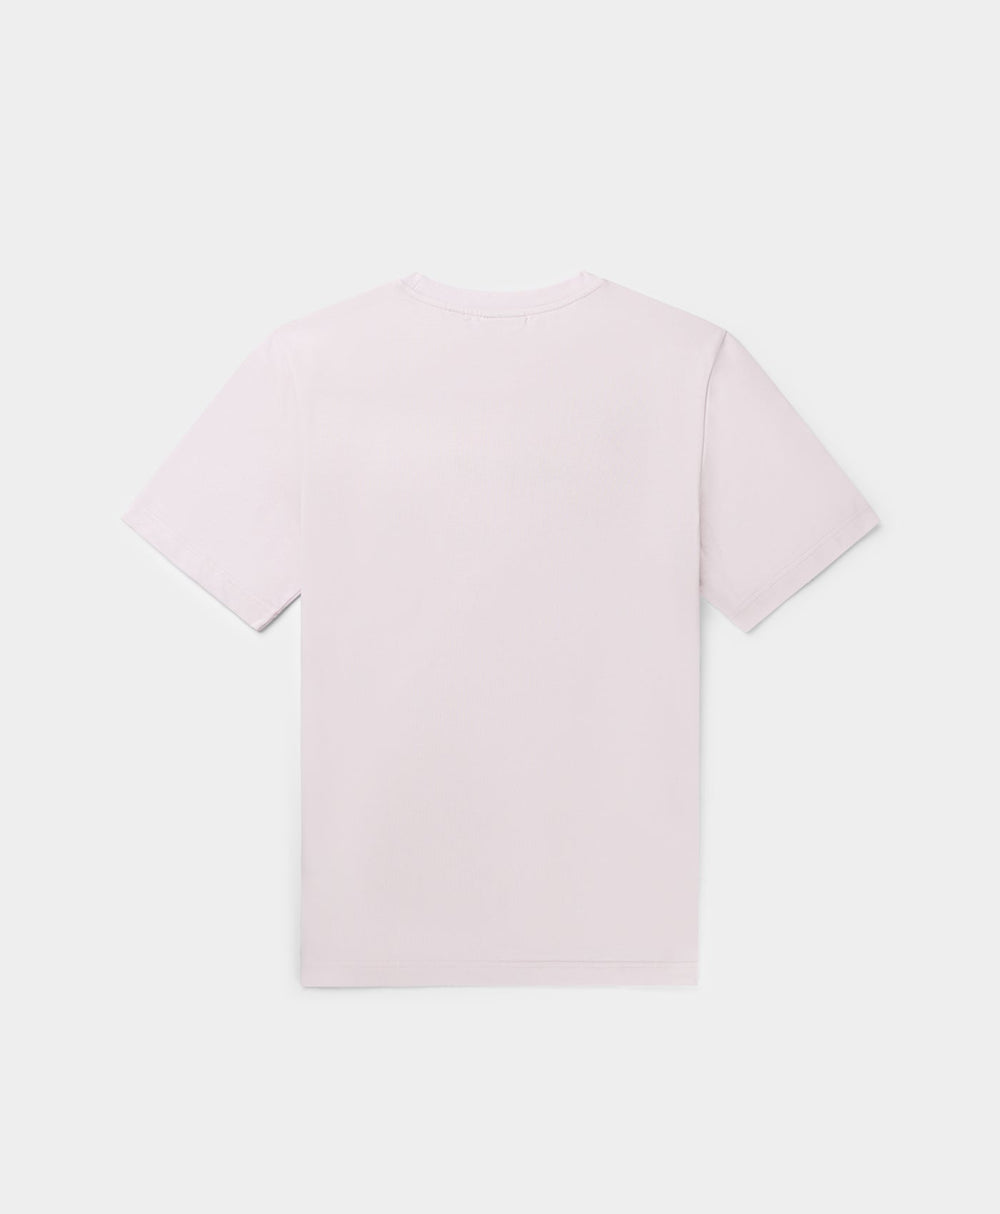 DP - Ice Pink Unified Type T-Shirt - Packshot - Rear